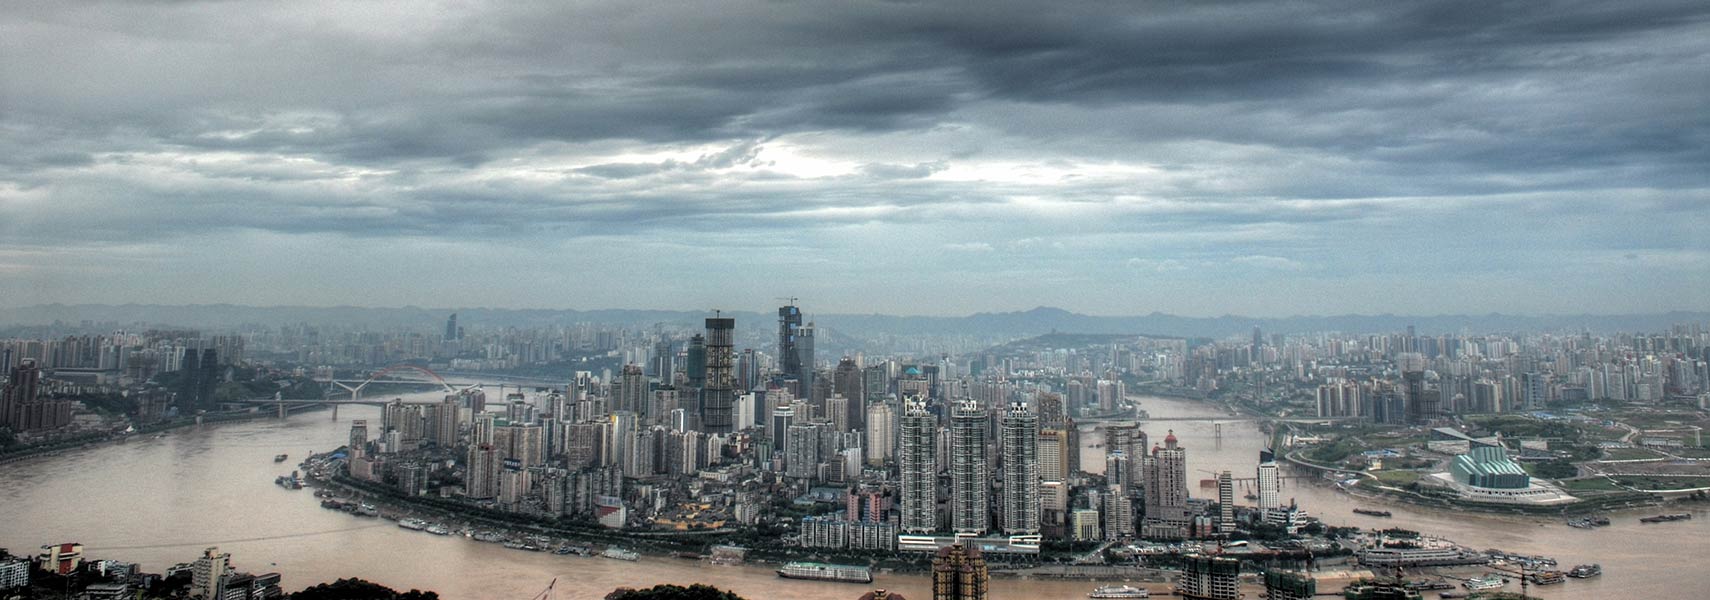 Skyline of Chongqing, China